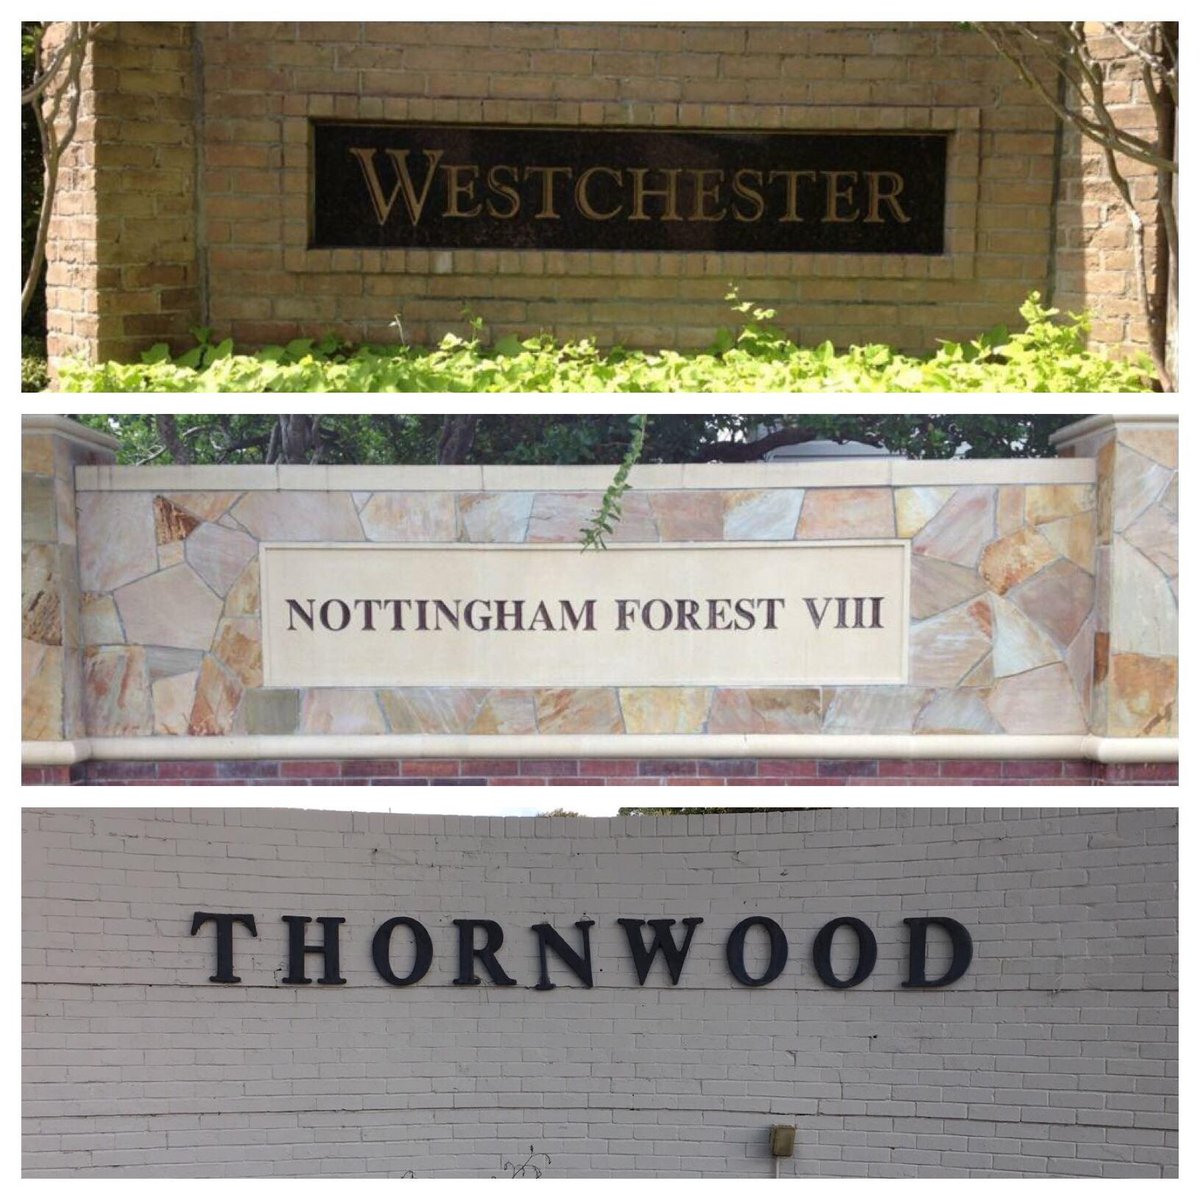 Westchester-NF8-Thornwood Facebook